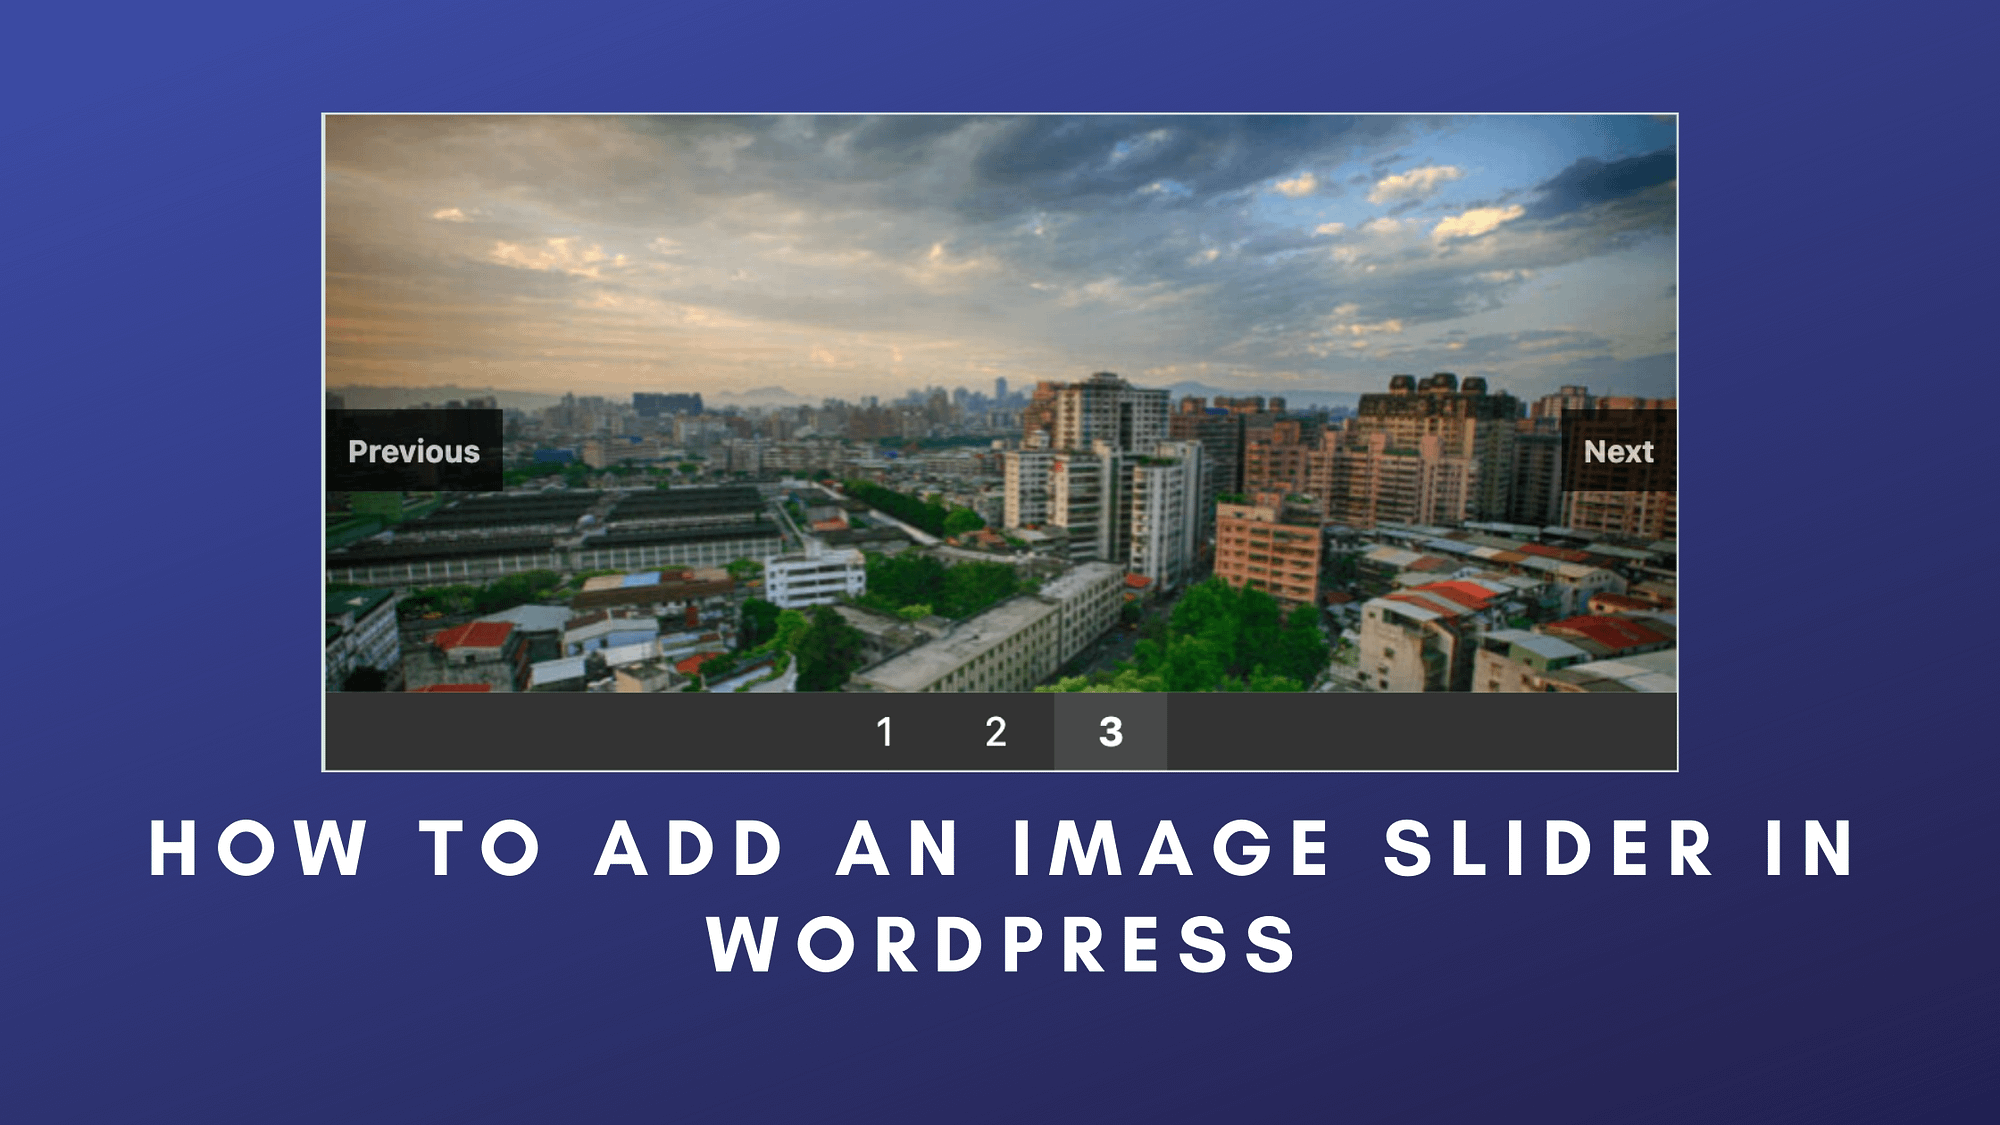 How To Add Image Carousel In WordPress Easily | Xplorers Of Fun